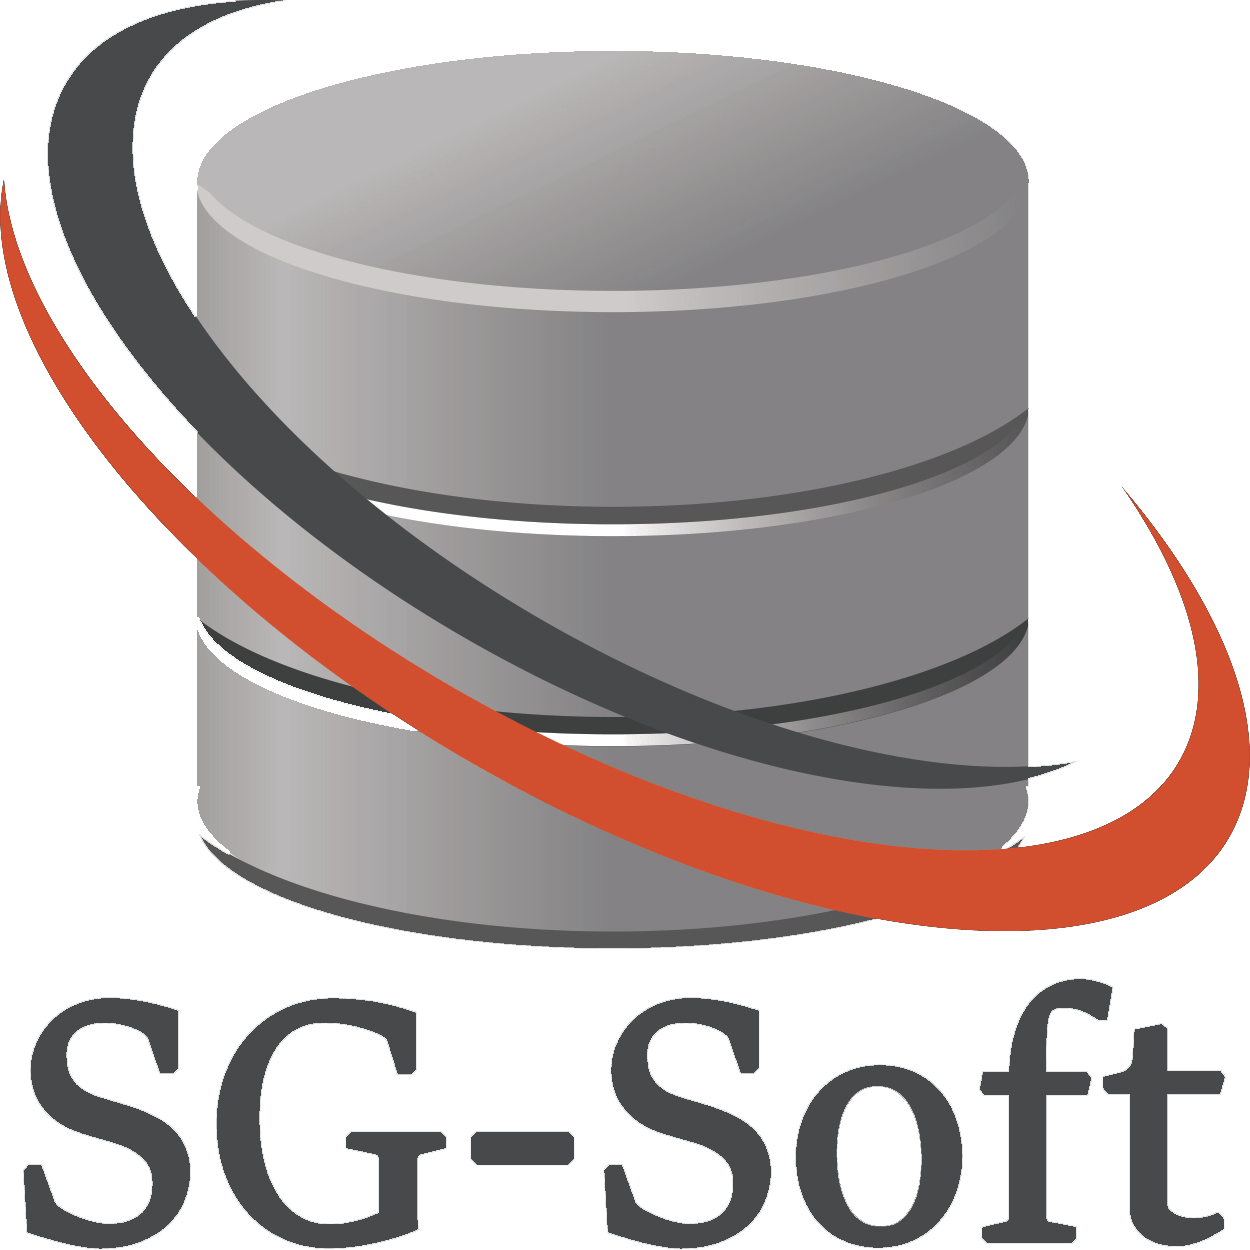 Phần mềm gửi tin nhắn hàng loạt - SG SOFT